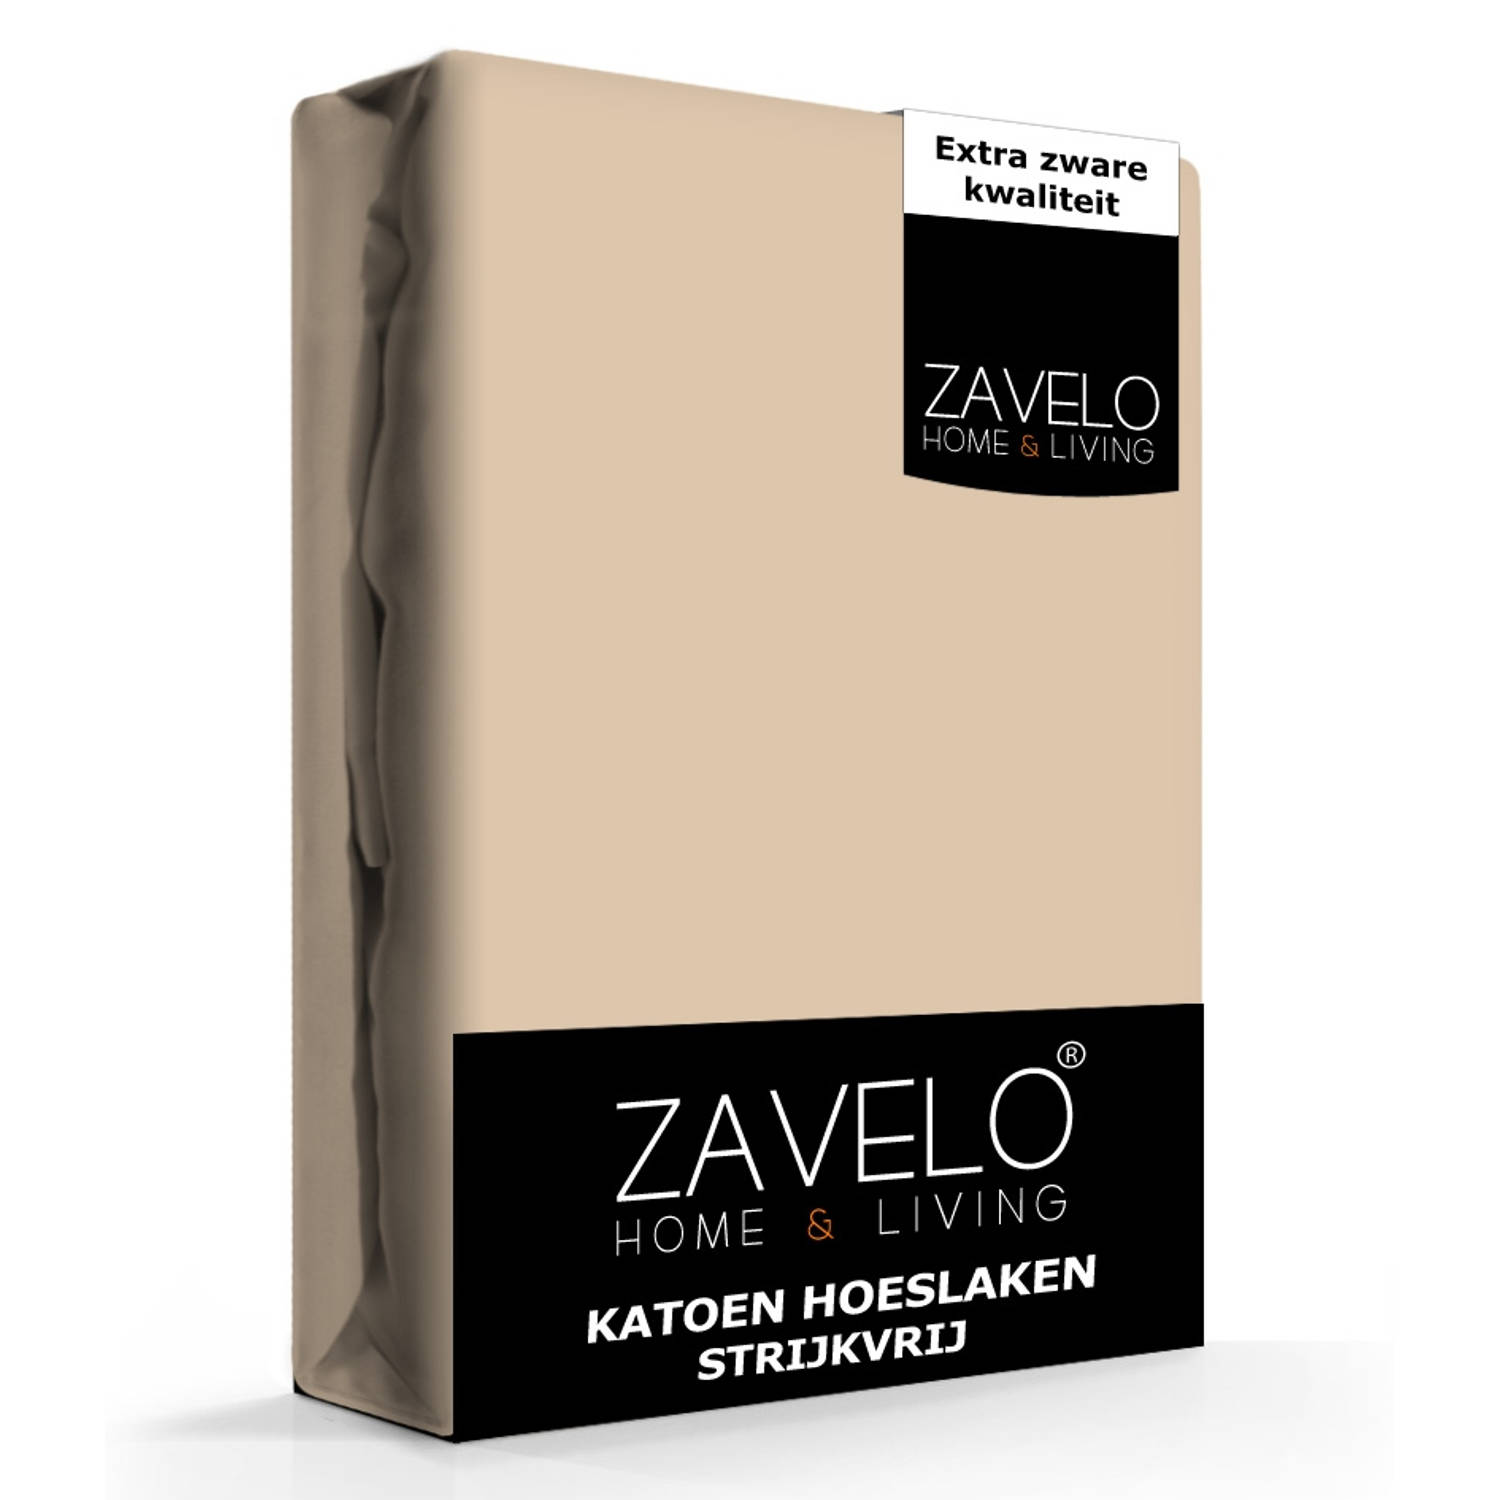 Slaaptextiel Zavelo Hoeslaken Katoen Strijkvrij Taupe-lits-jumeaux (180x200 Cm)